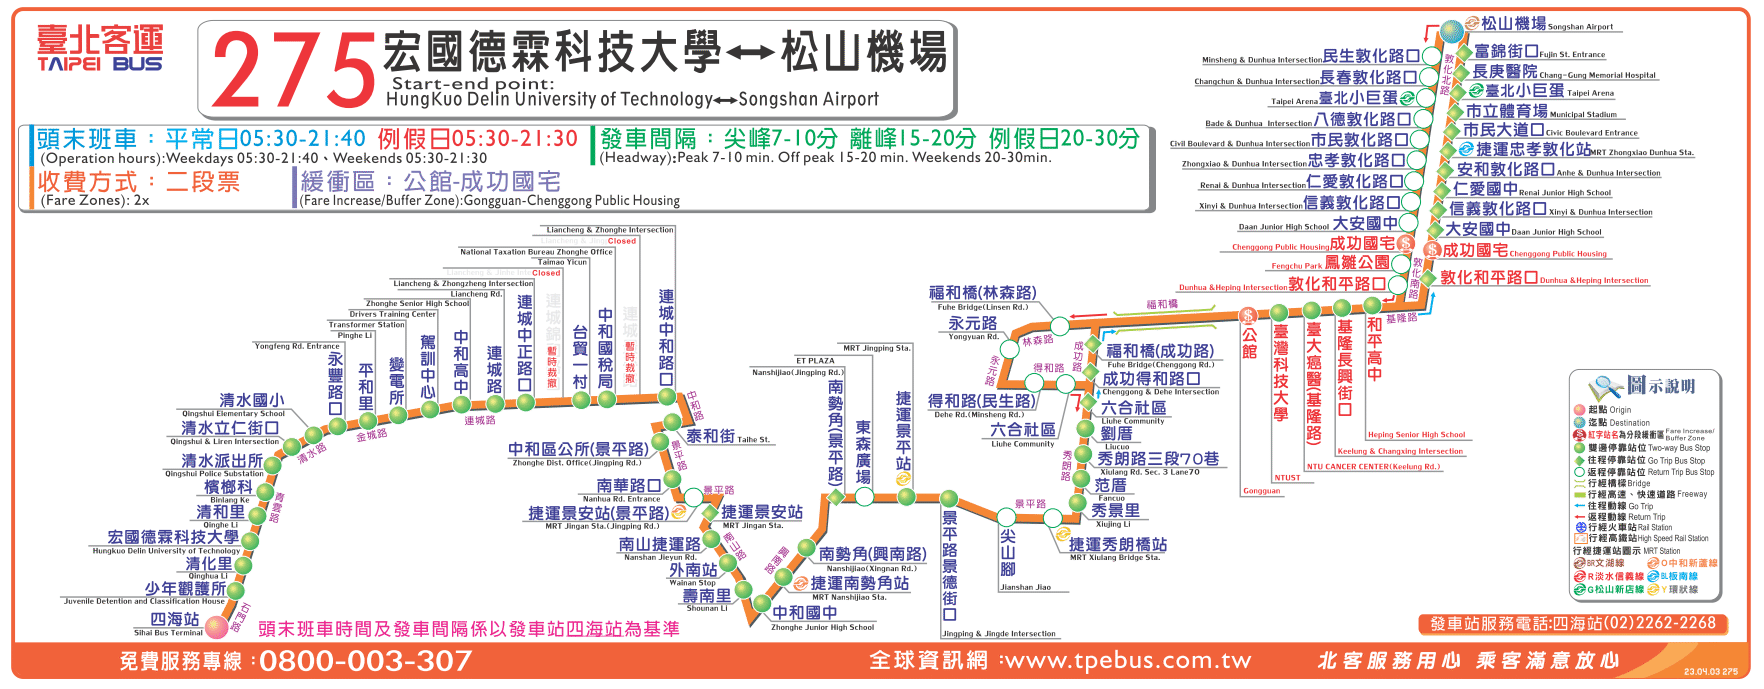 Re: 問題 到中和秀山國小附近的公車？ - 看板 Map-Guide - 批踢踢實業坊